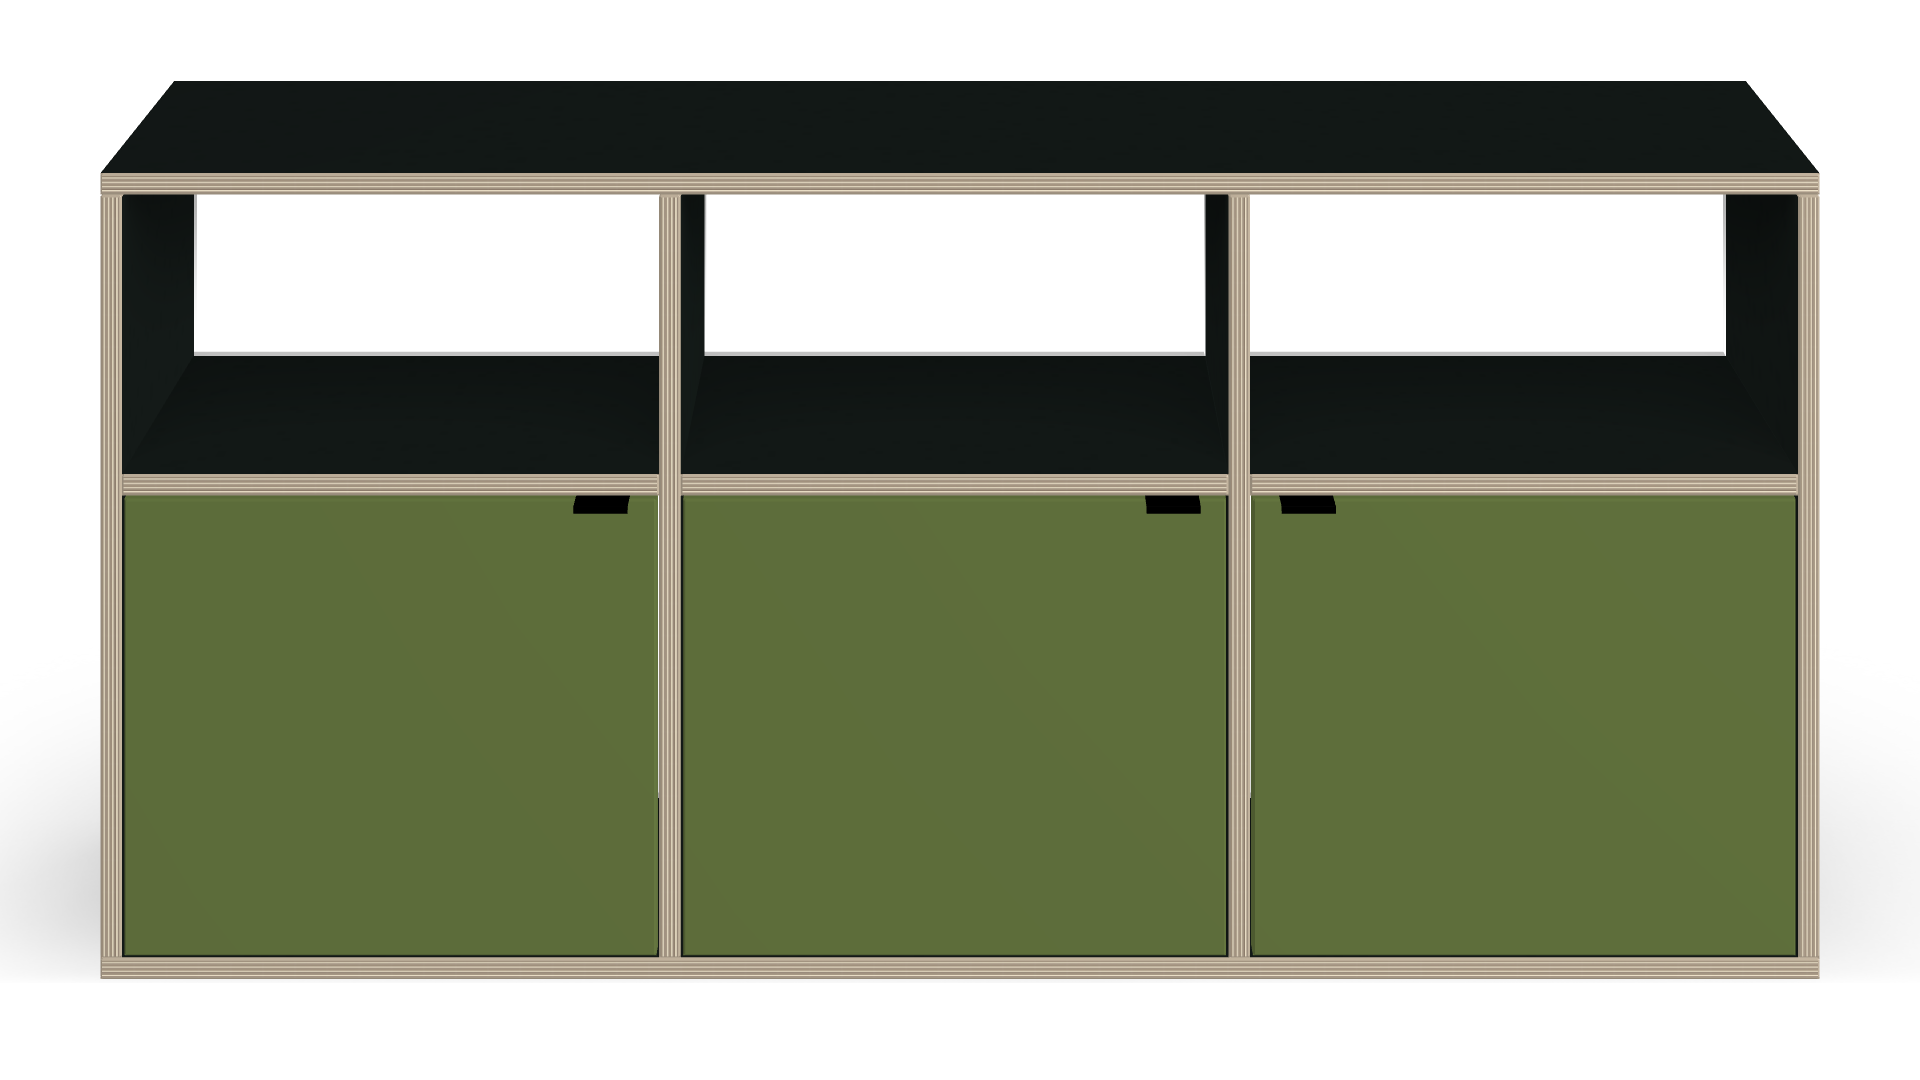 Low shelf with doors